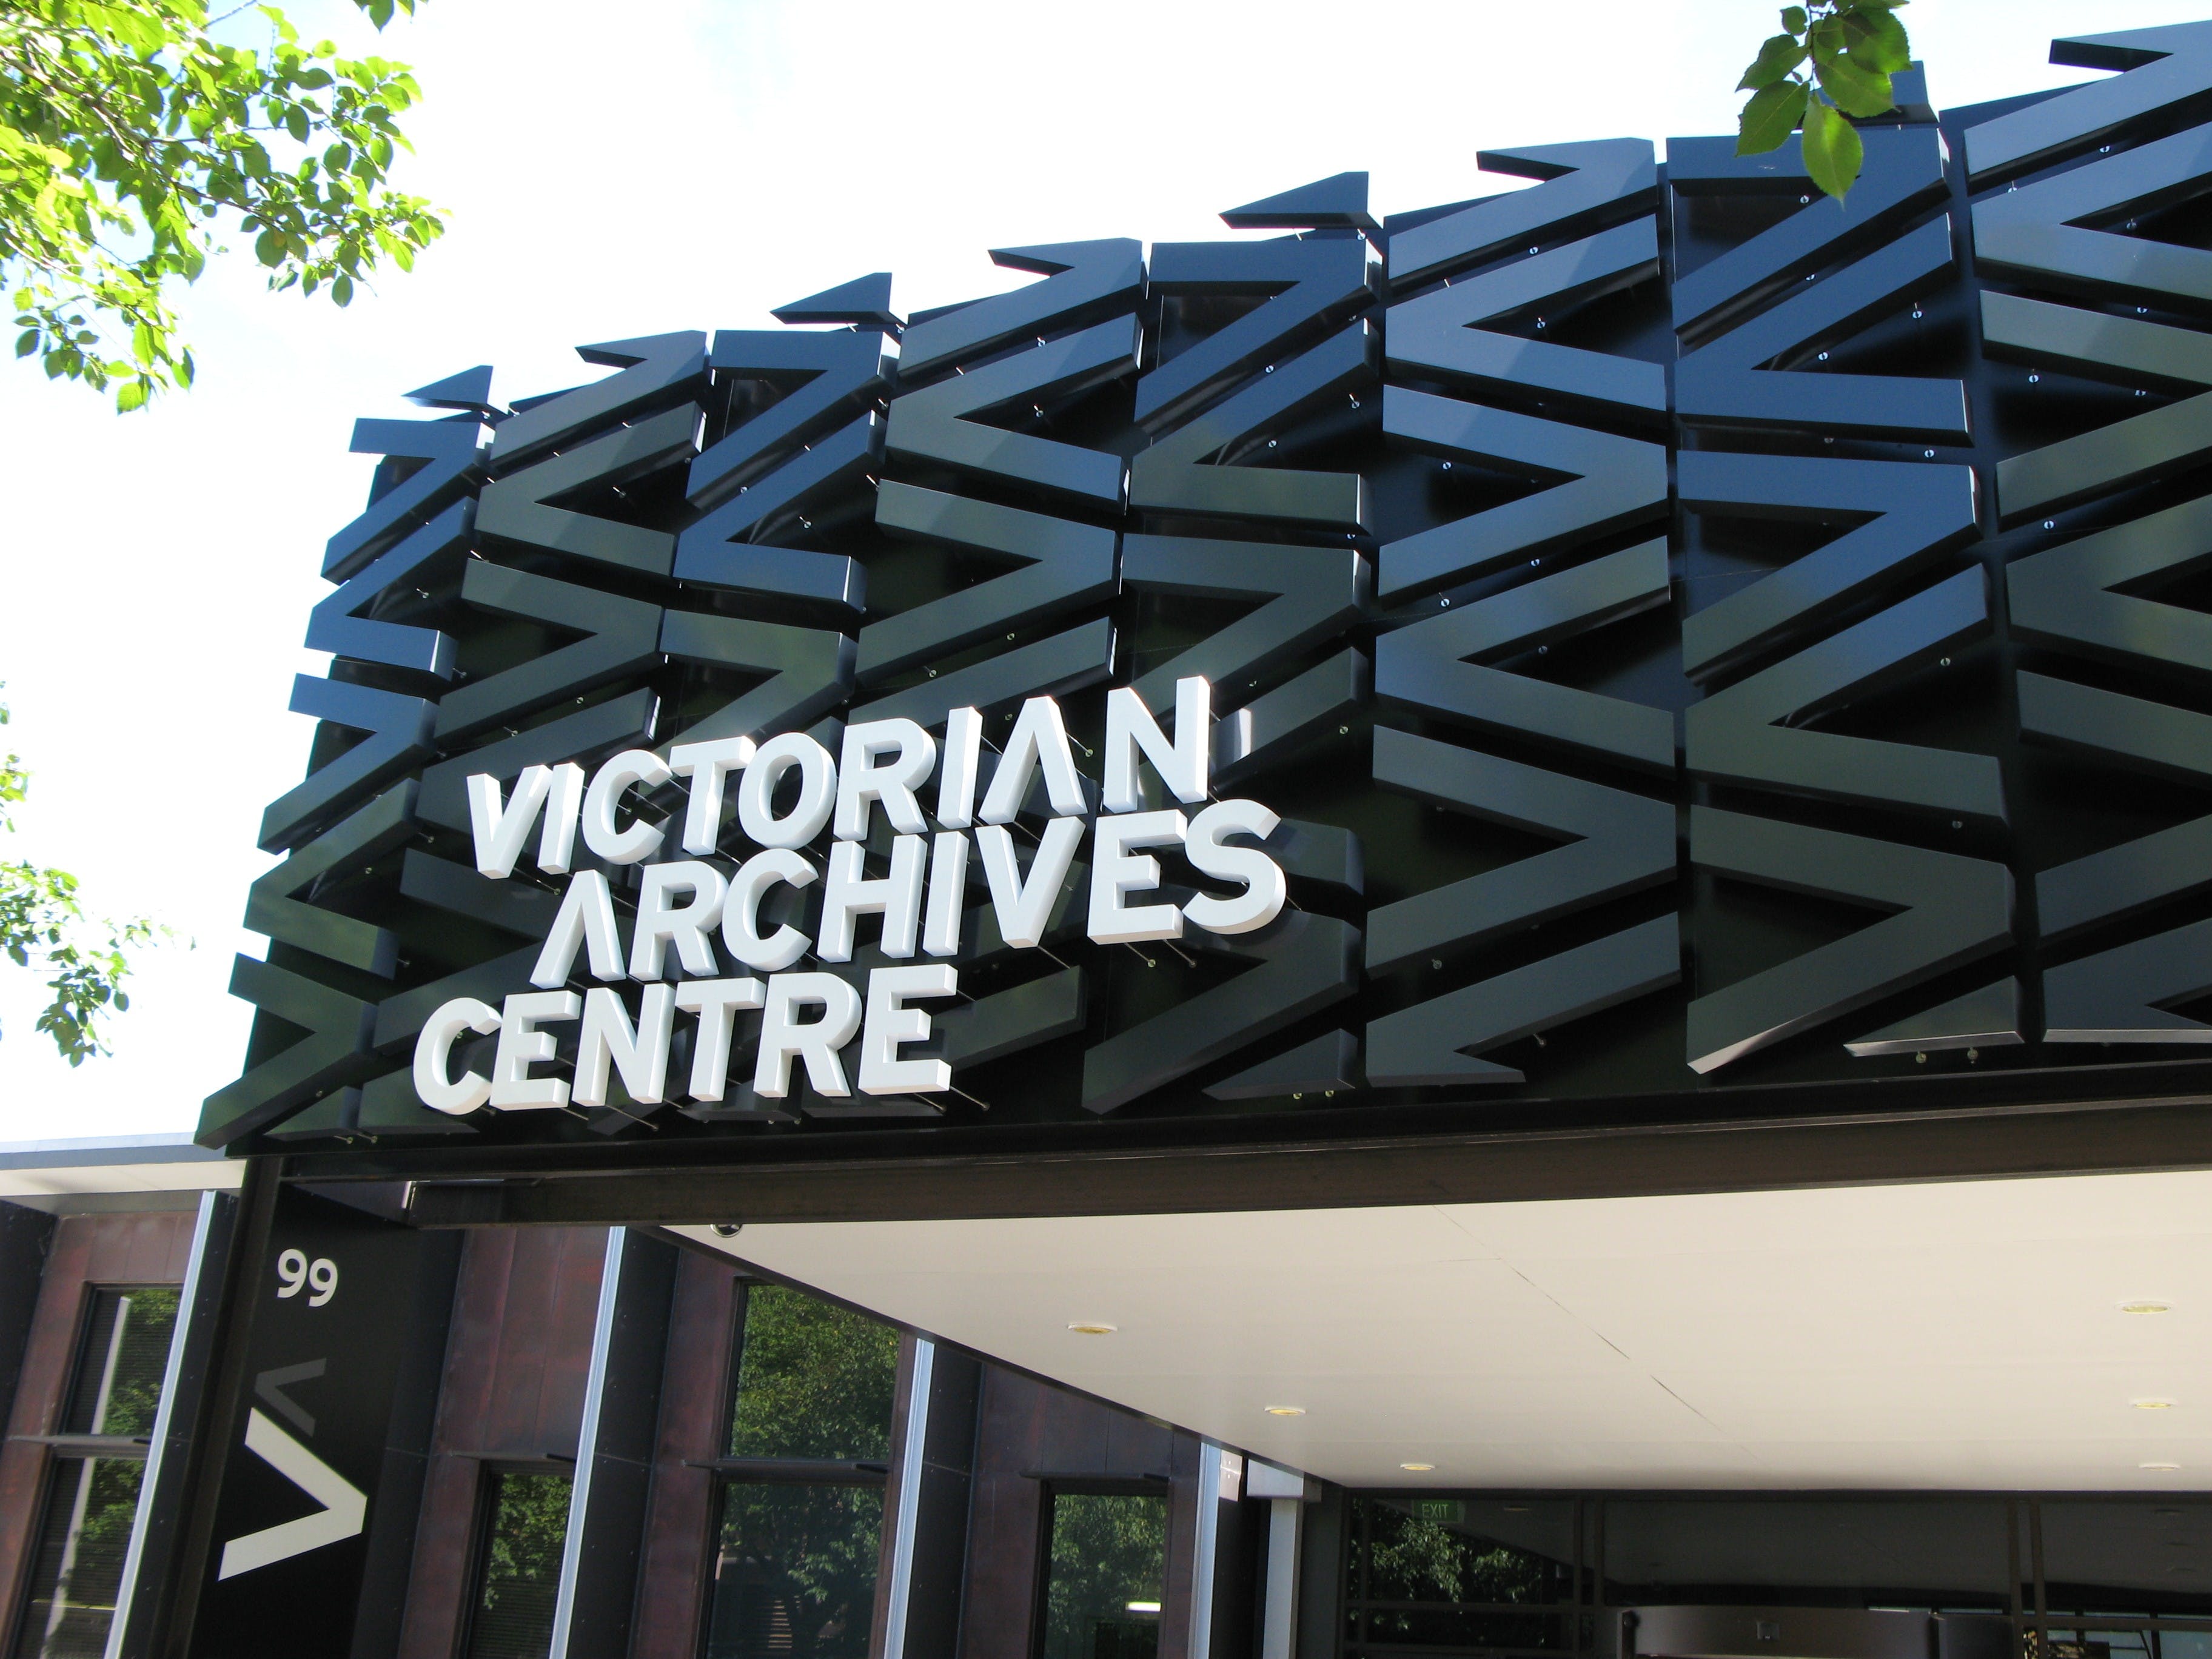 Public Record Office Victoria - Attractions